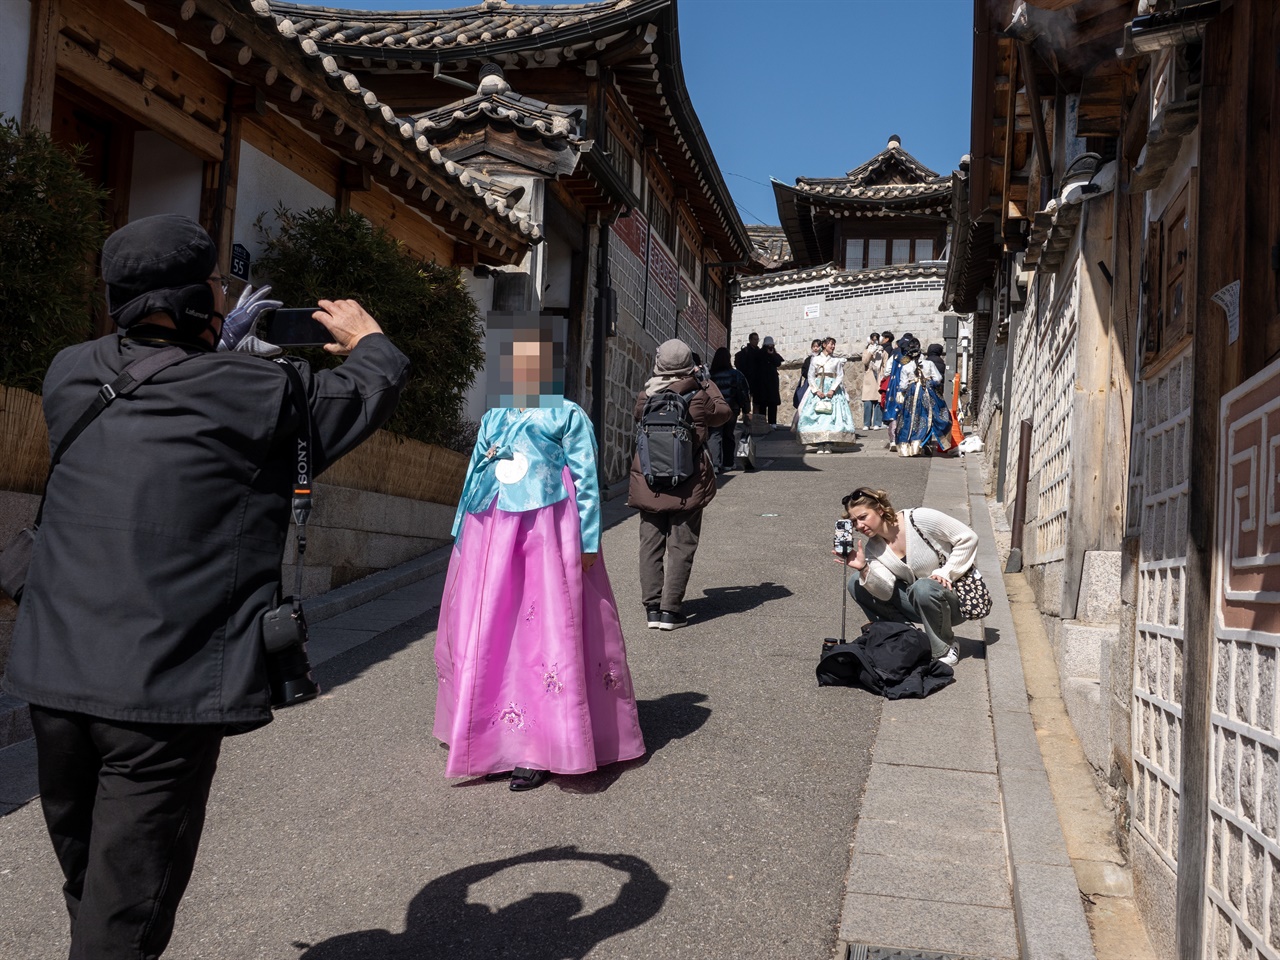 한 외국인 관광객이 사진 촬영하는 모습을 다시 촬영하고 있다.